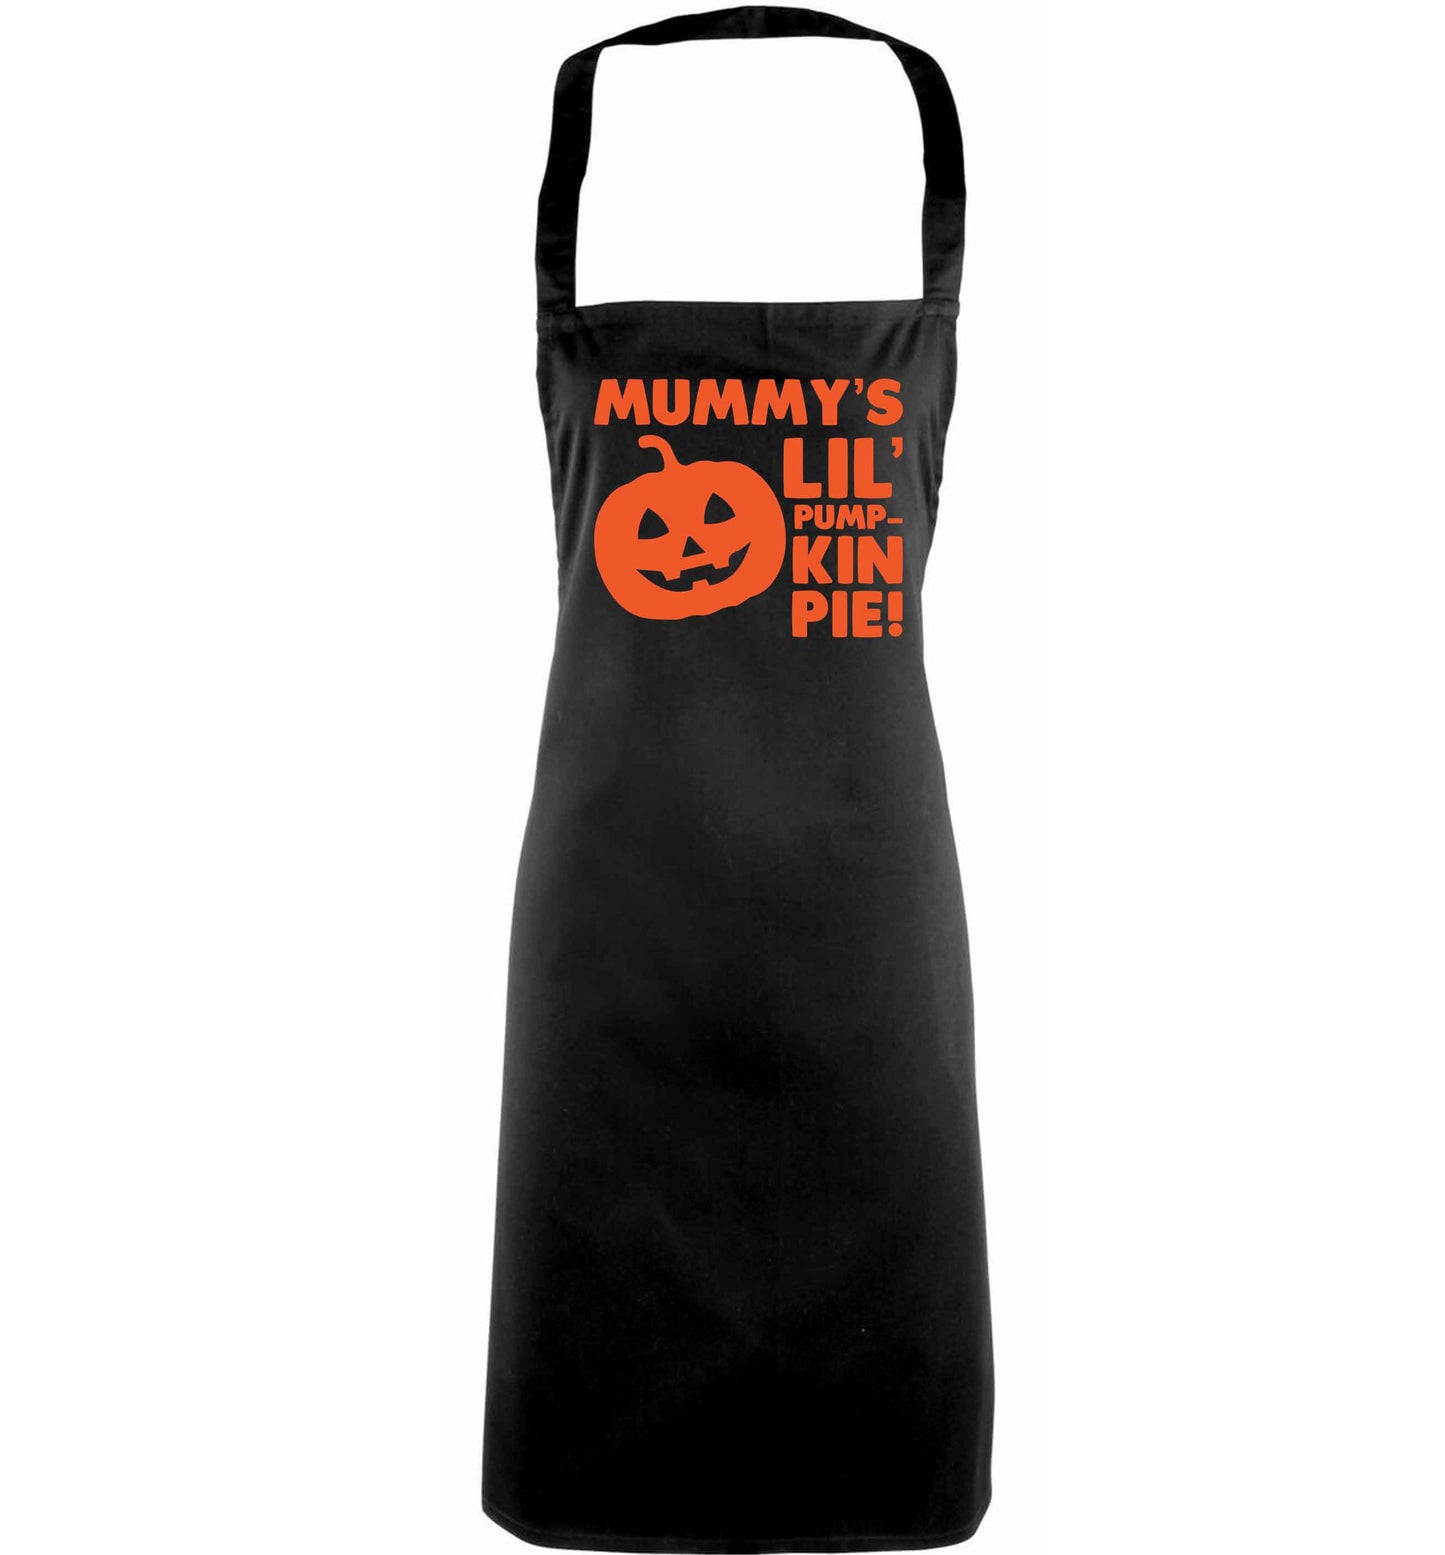 Mummy's lil' pumpkin pie adults black apron